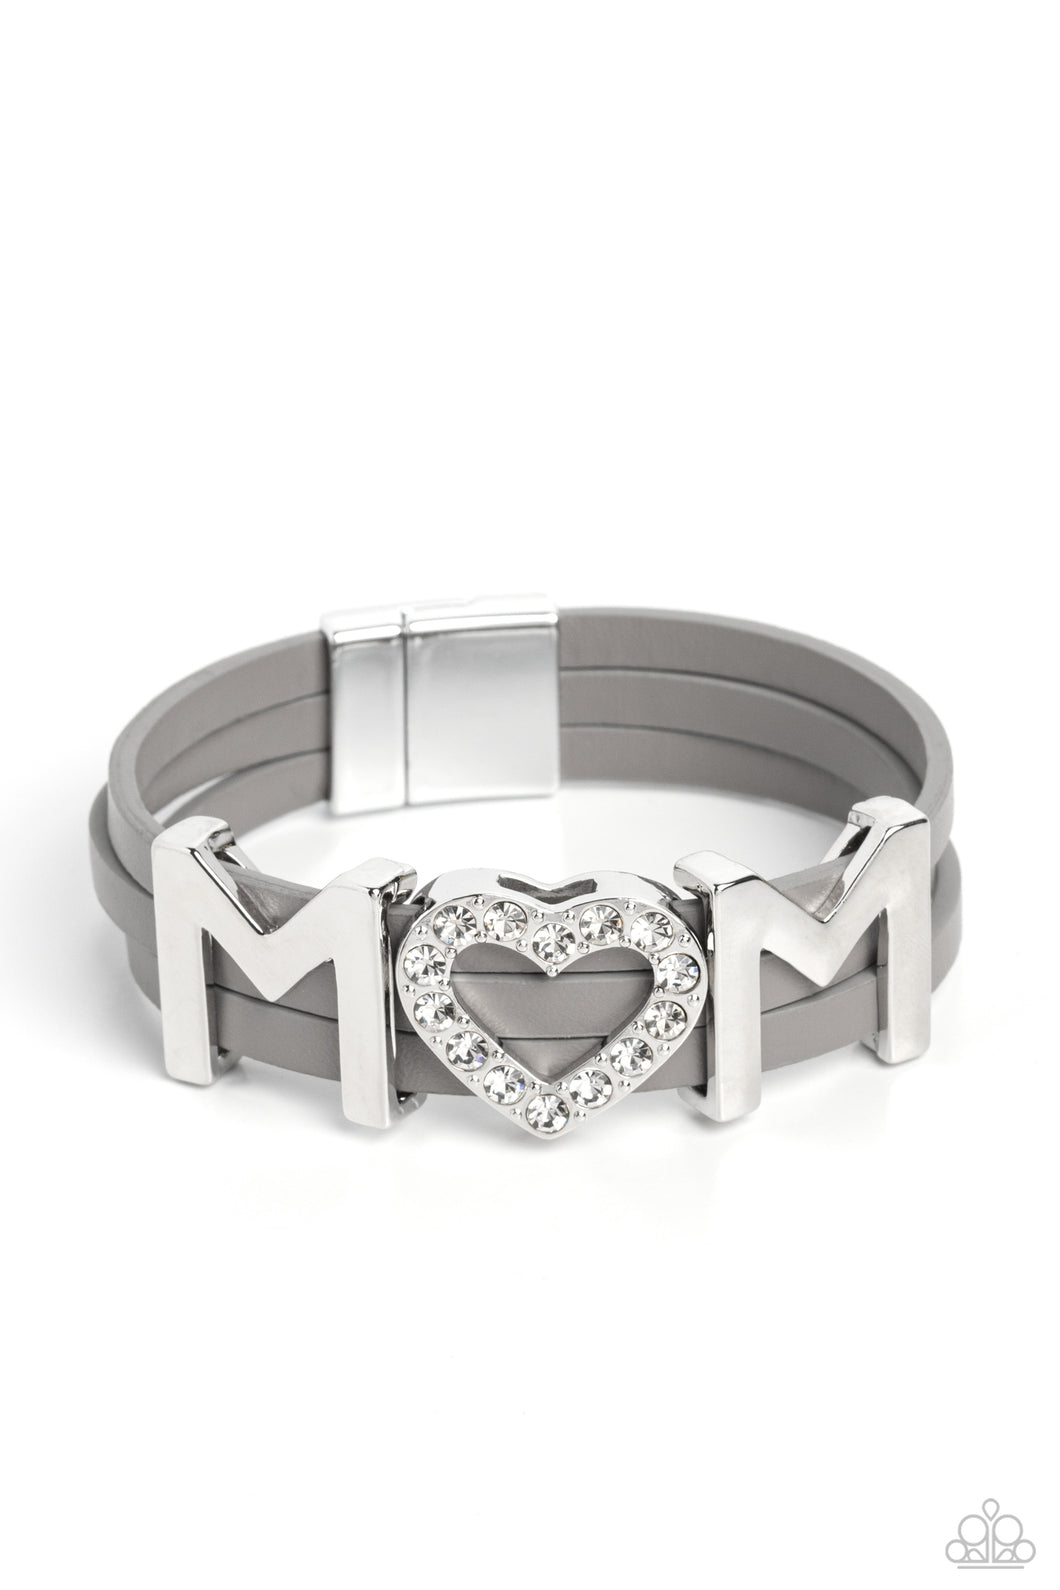 Heart of Mom - Silver Bracelet